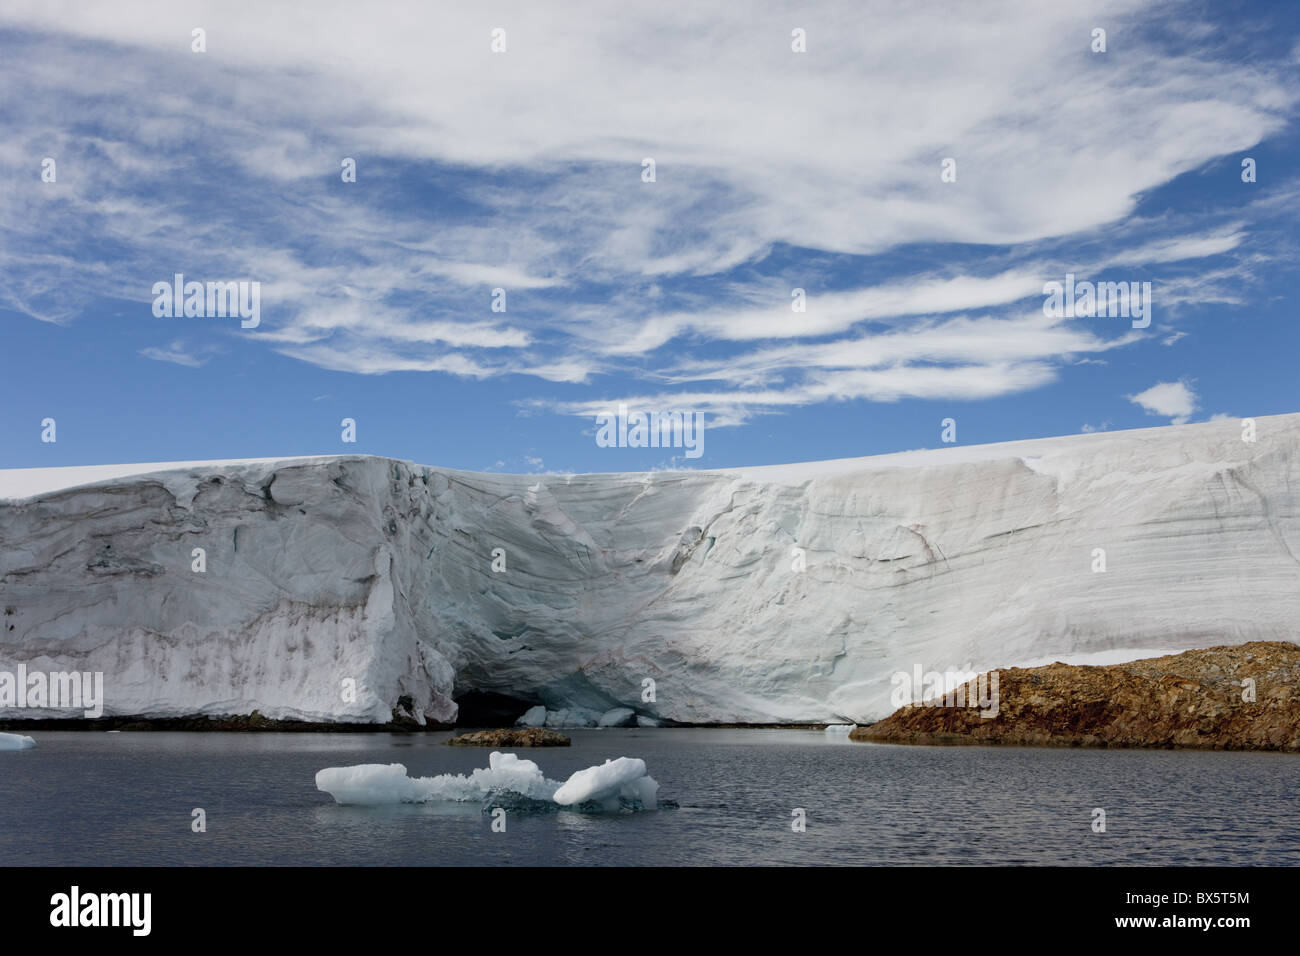 Glacier près de la station de recherche antarctique, Vernadsky, péninsule antarctique, régions polaires Banque D'Images